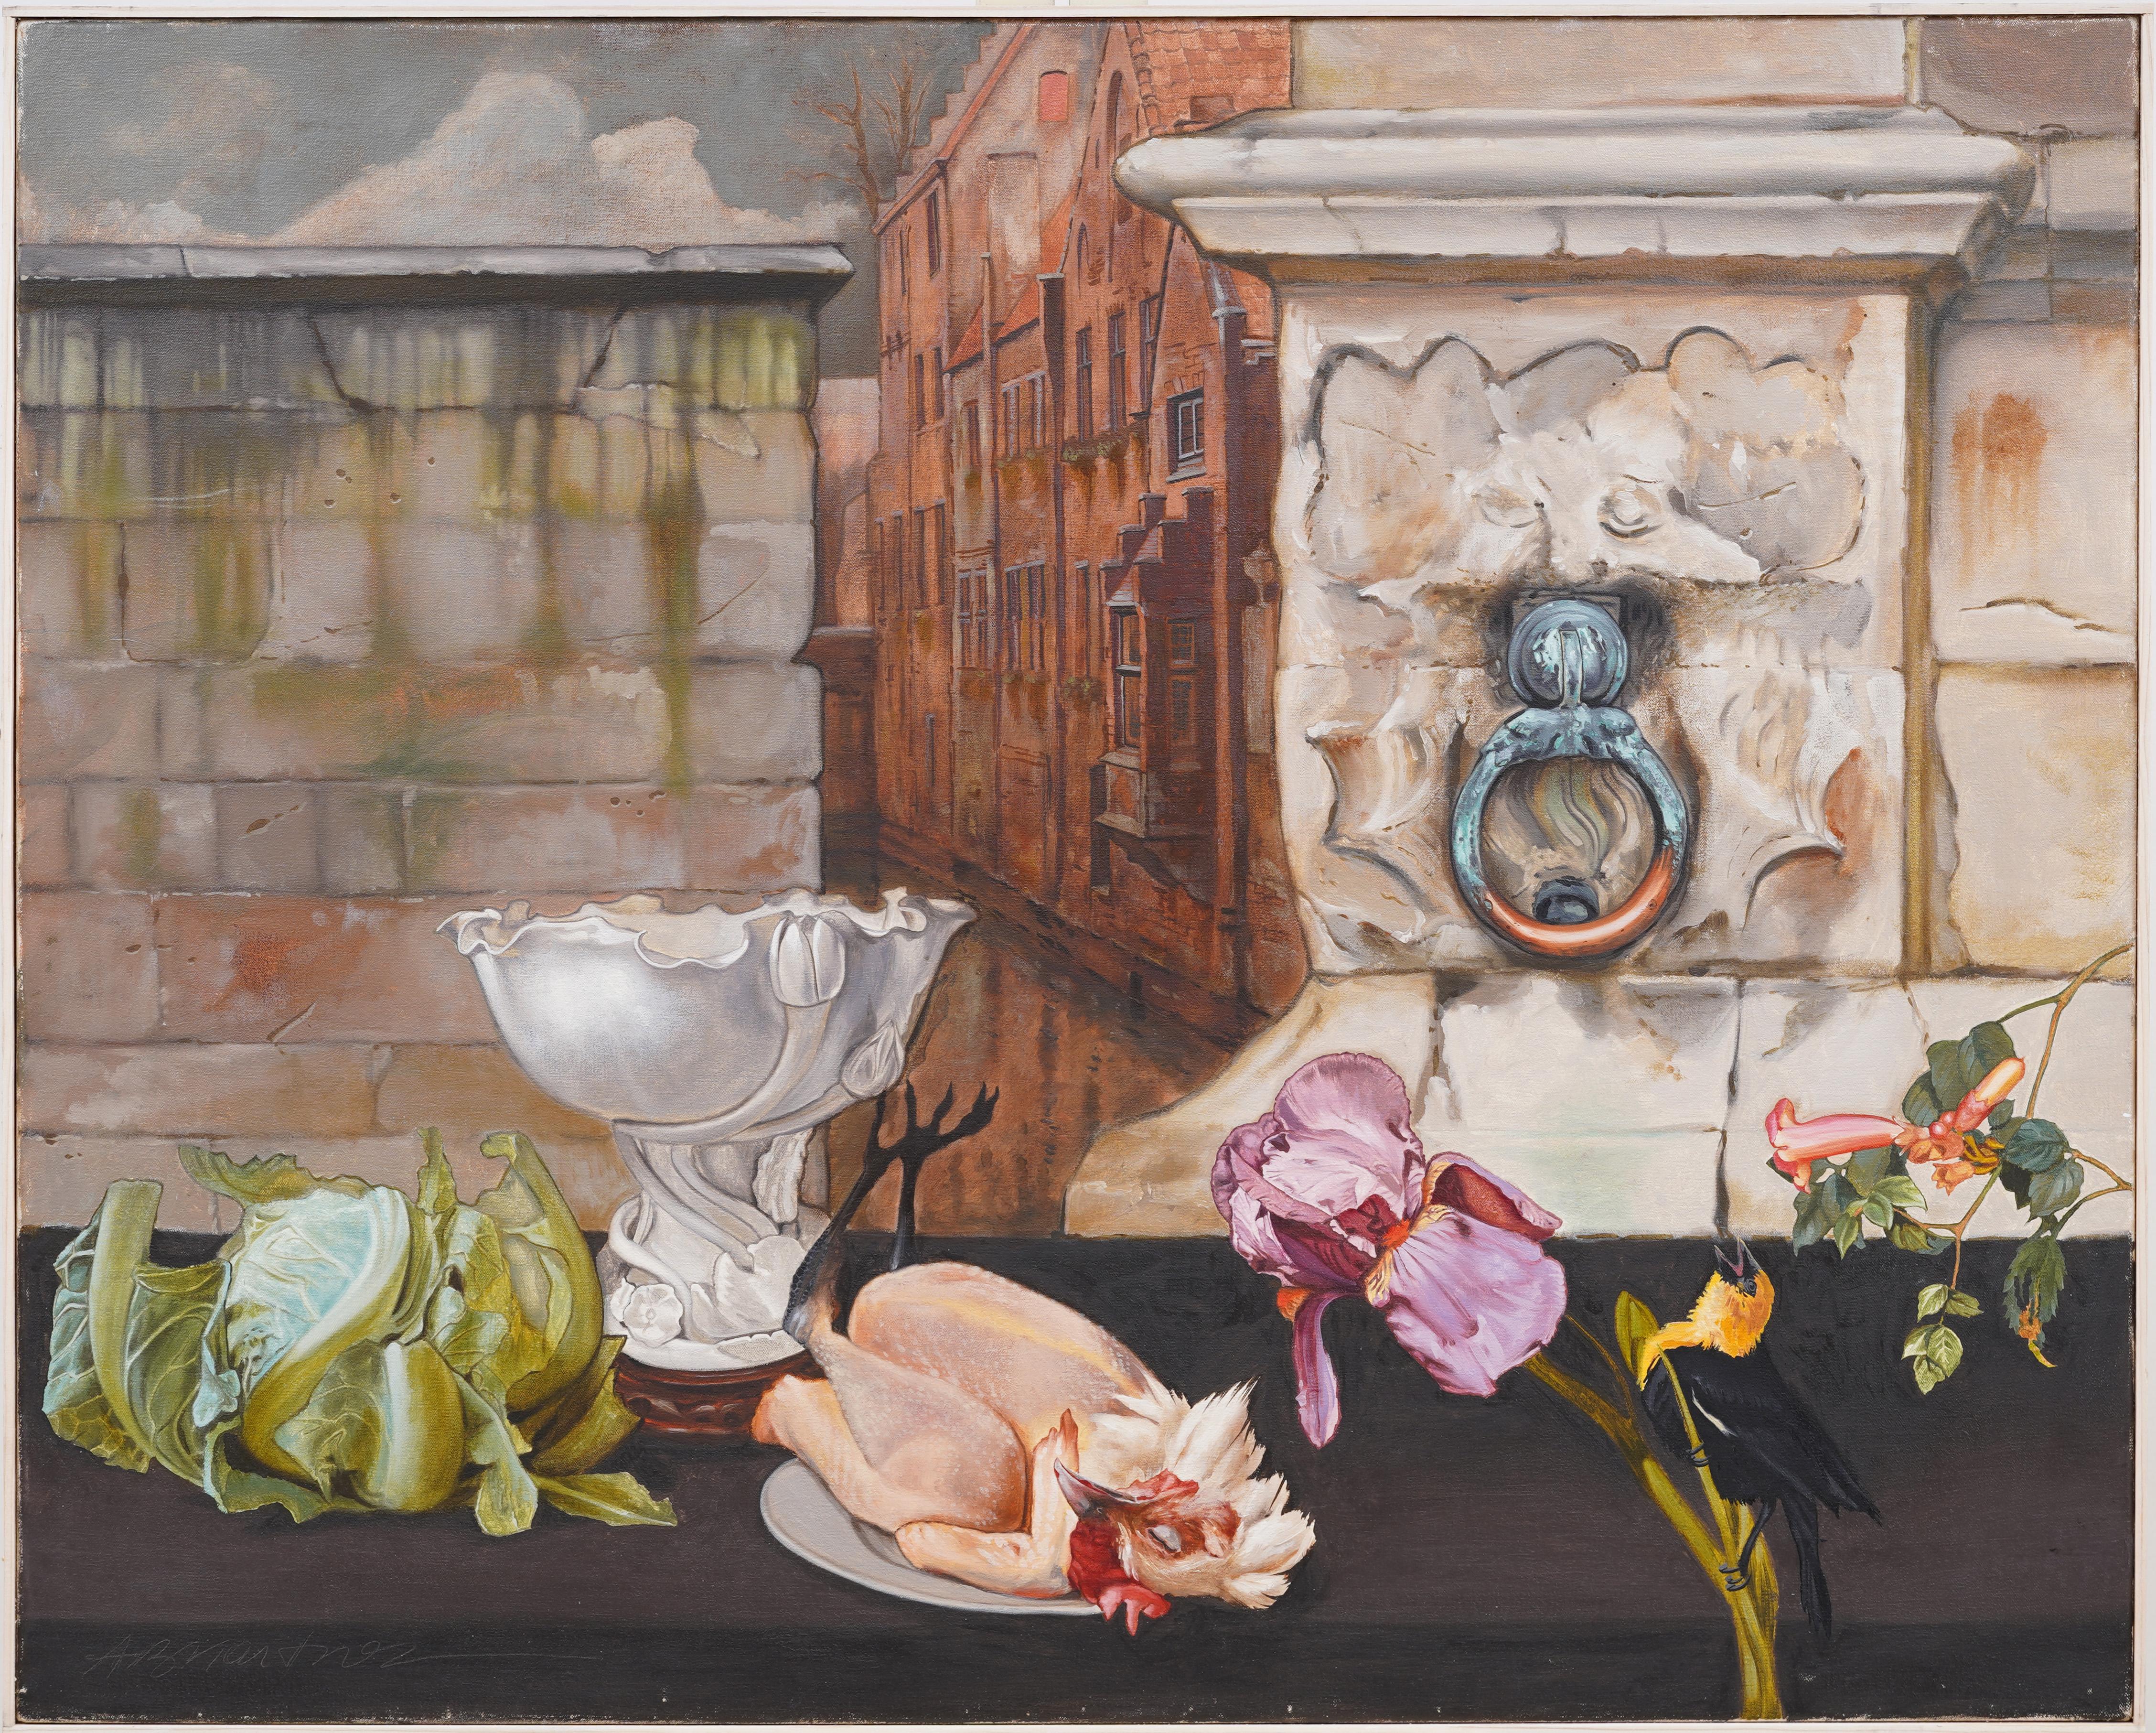 Superbe nature morte moderniste américaine peinte à l'huile par Adrian Martinez (né en 1949) .  Huile sur toile.  Exposé.  